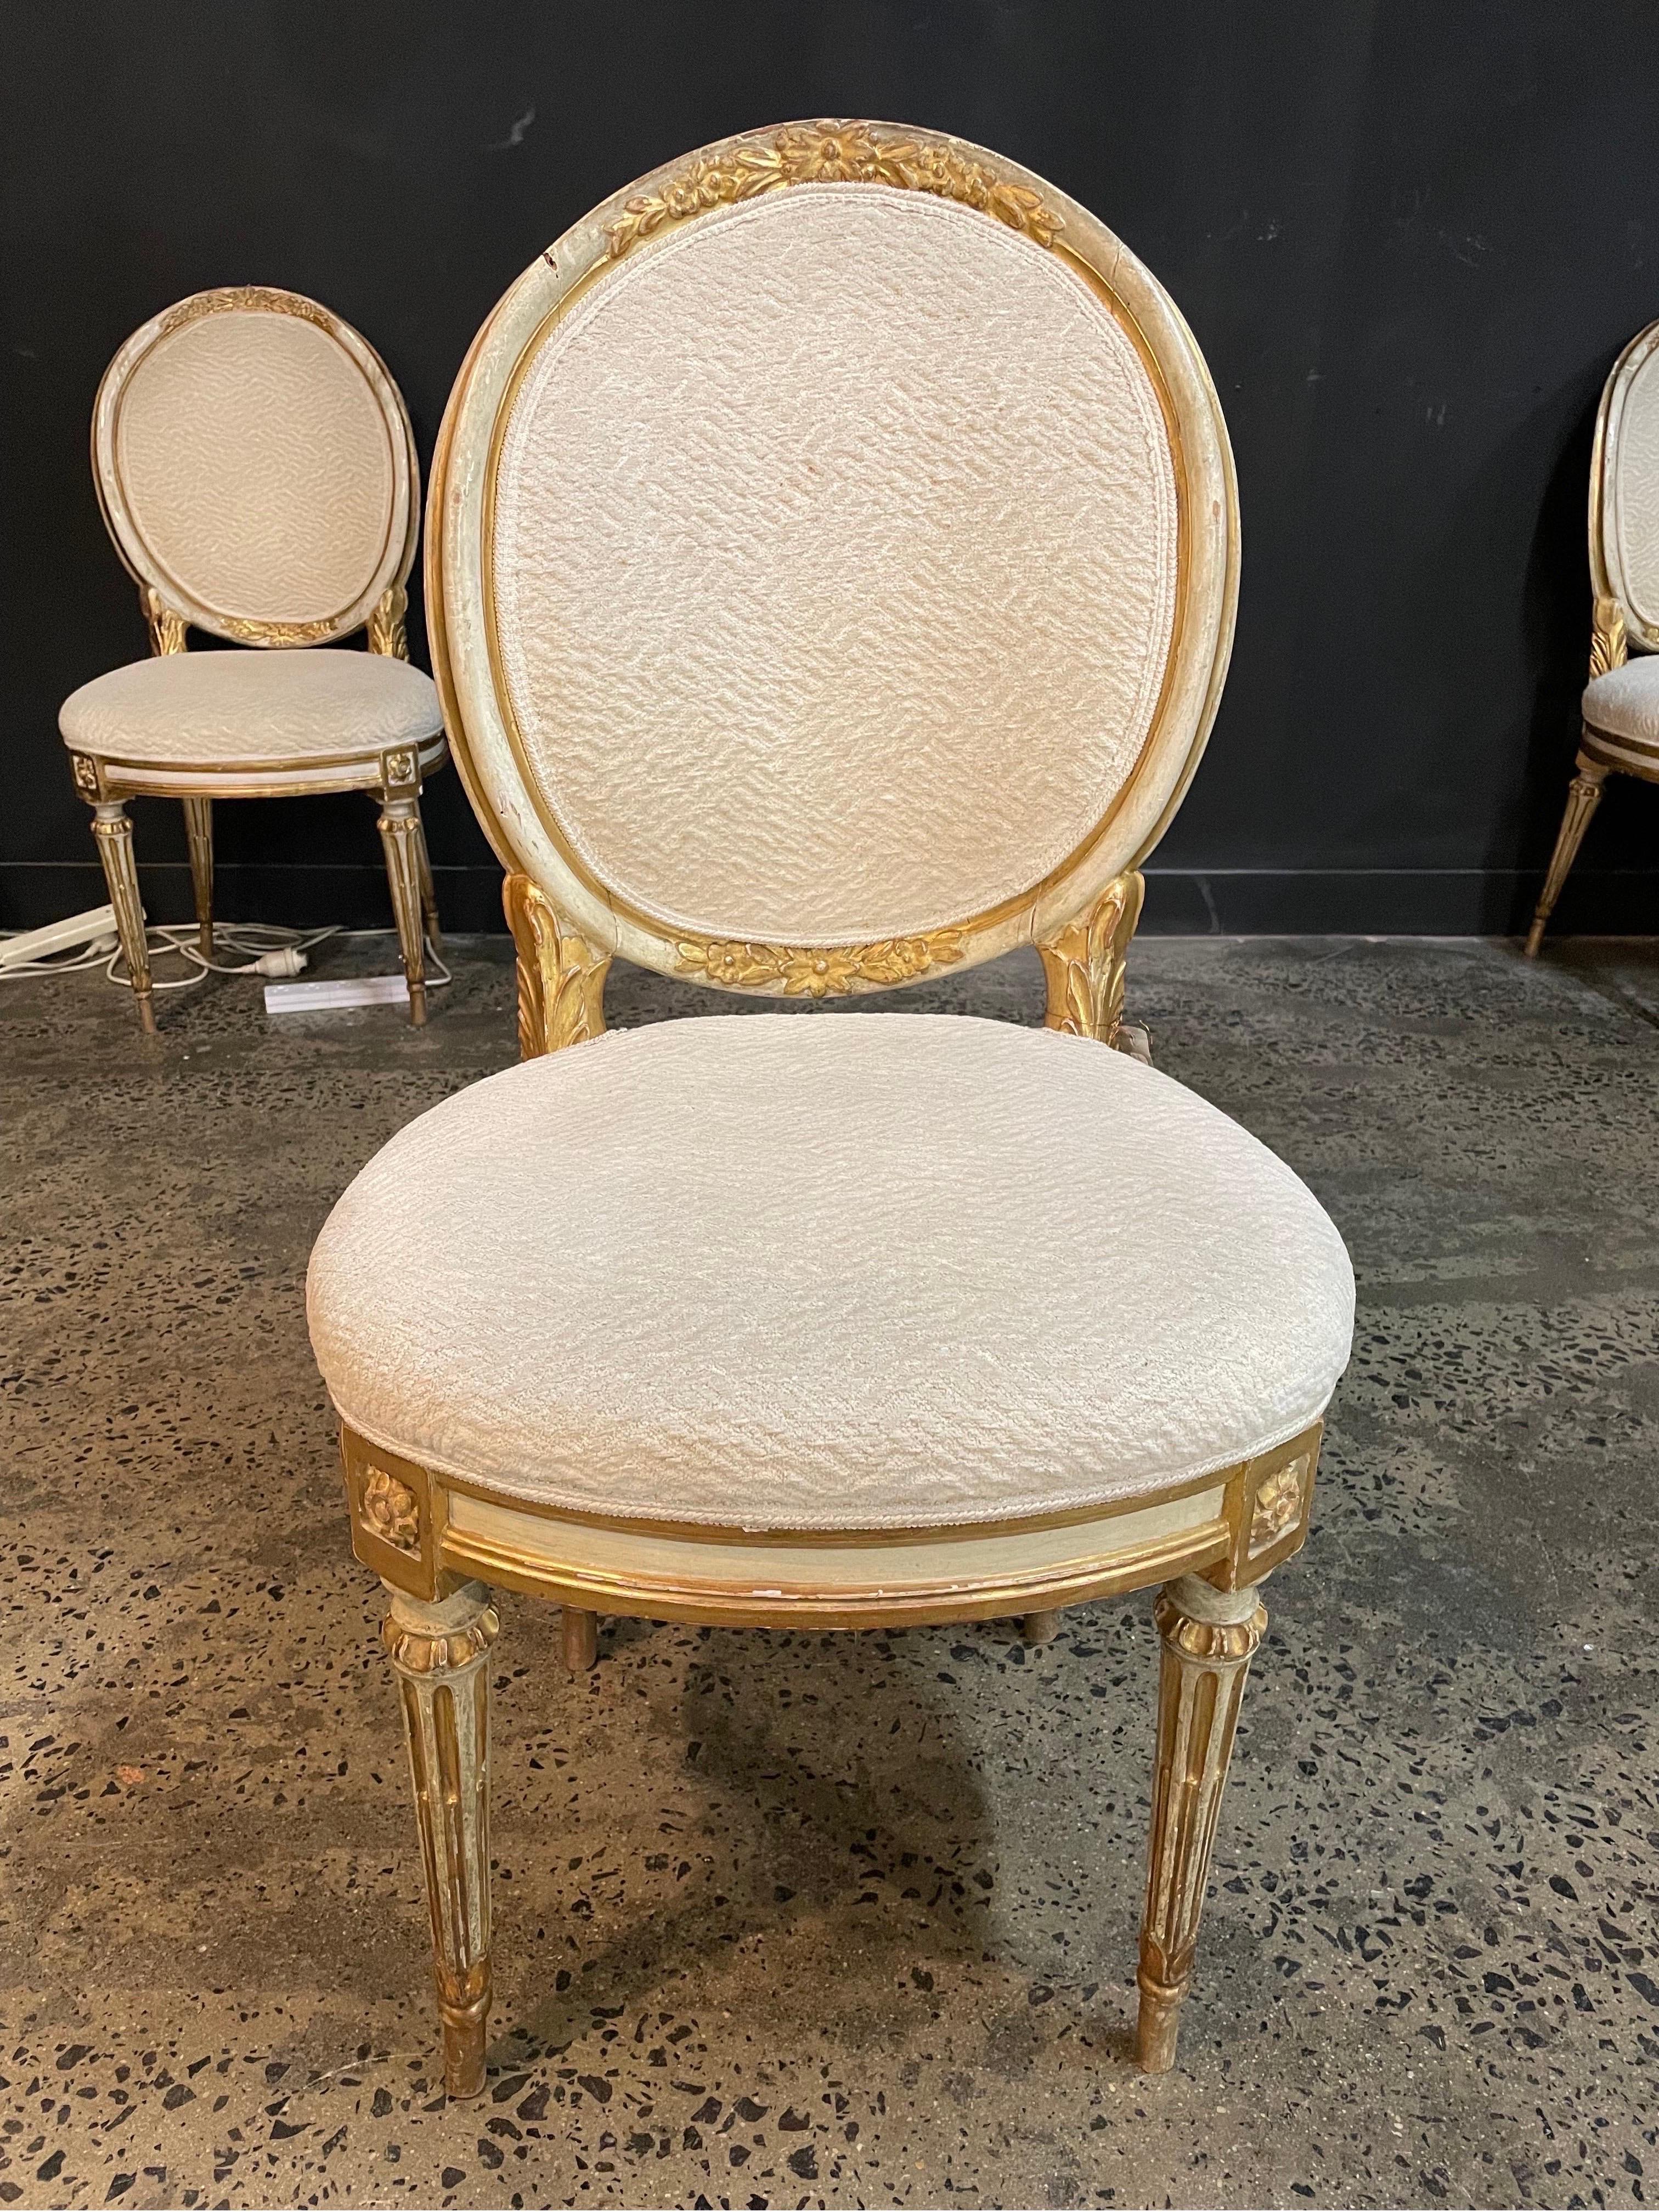 Ensemble de douze chaises de salle à manger italiennes de style Louis XVI, peintes et dorées parcellaires, 19e siècle

Chaises à dossier tablette avec détails floraux sculptés, reposant sur des pieds cannelés ornés de rosettes, recouvertes d'un